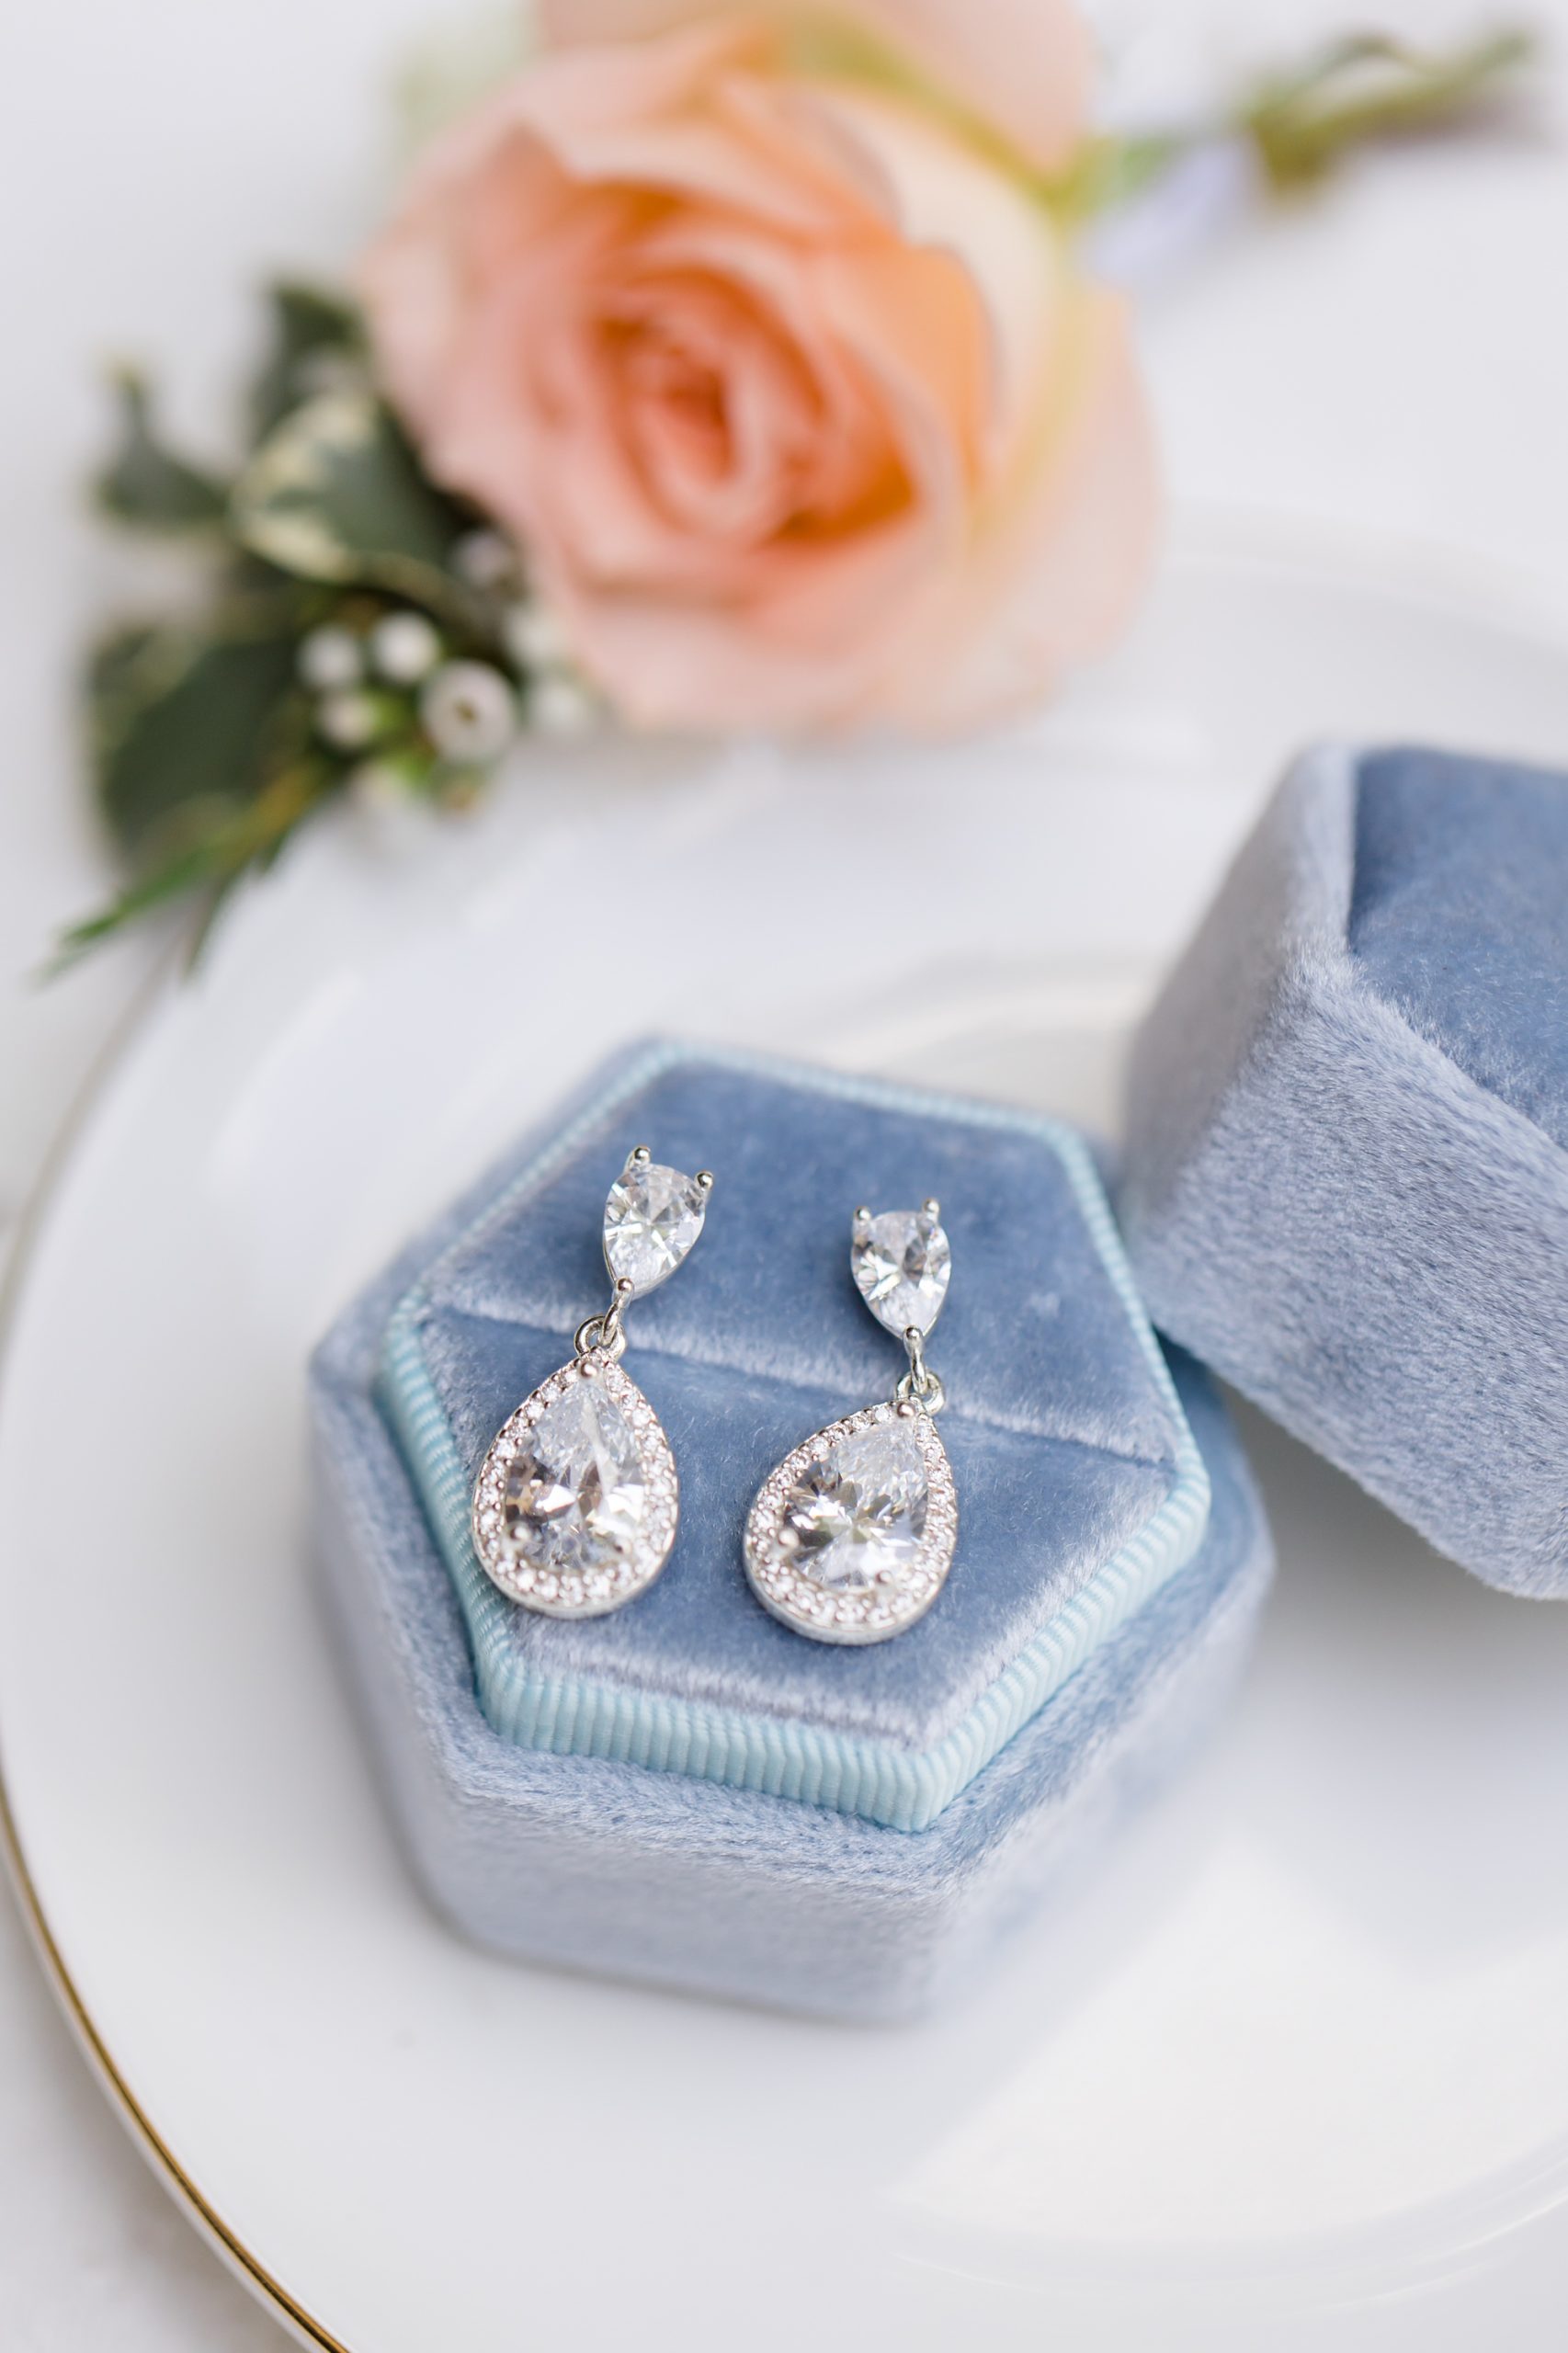 bride's earrings rest in pale blue jewelry box